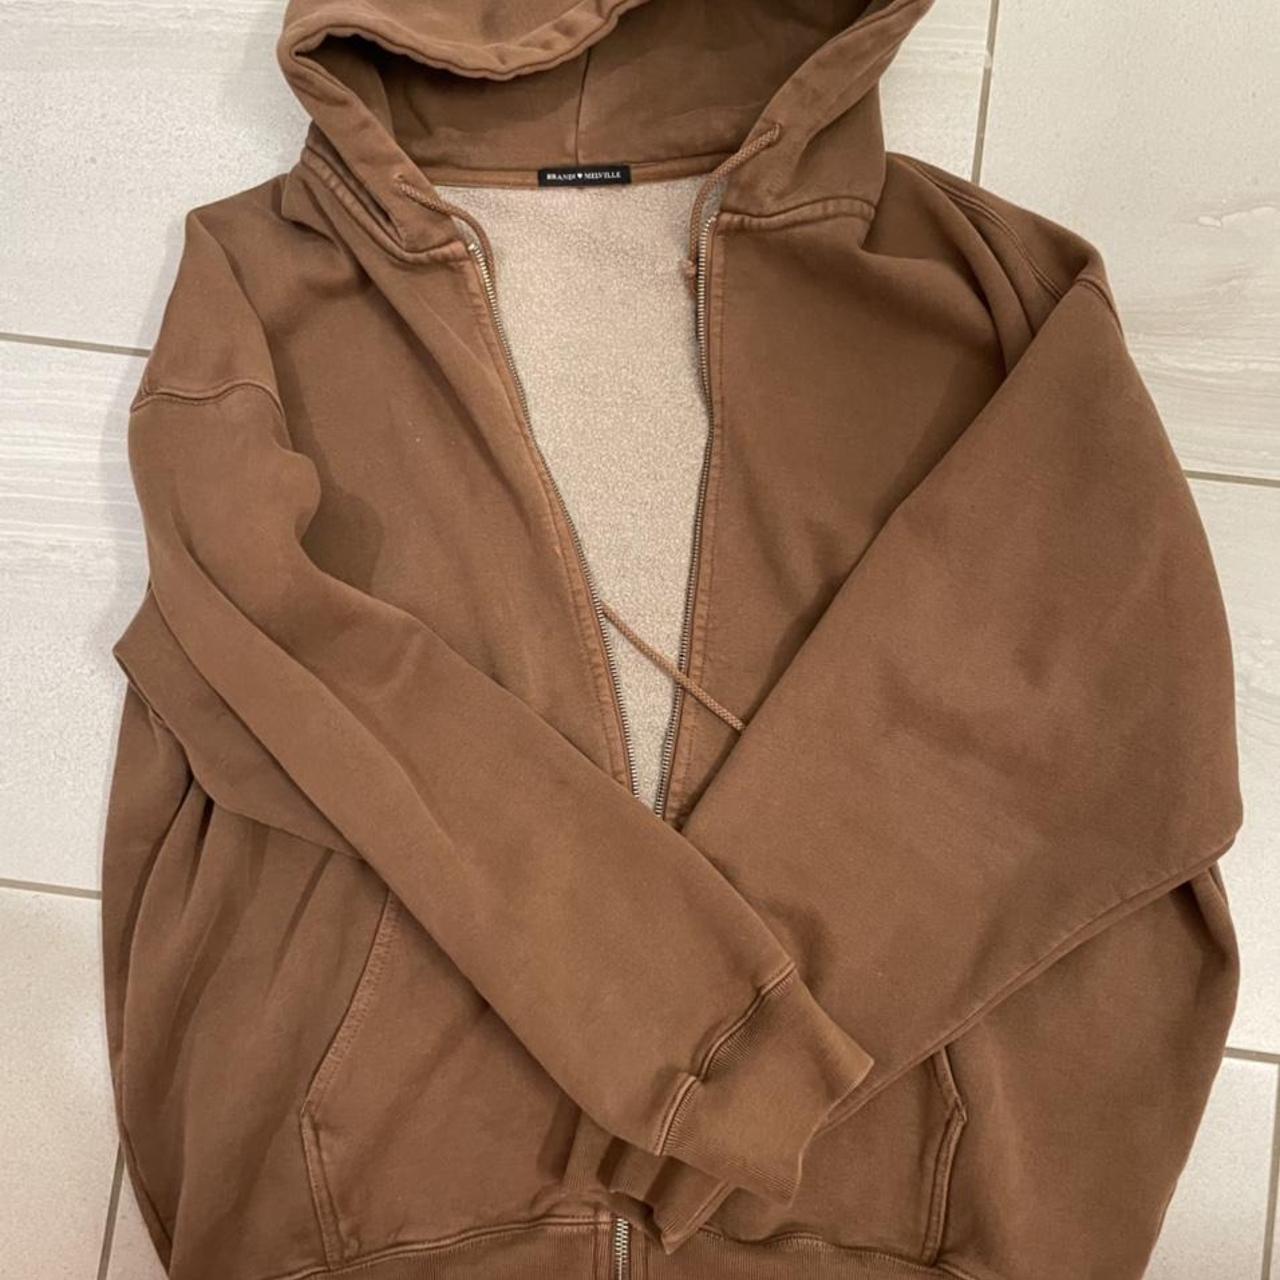 Brandy melville over sized brown zip up hoodie. Very - Depop